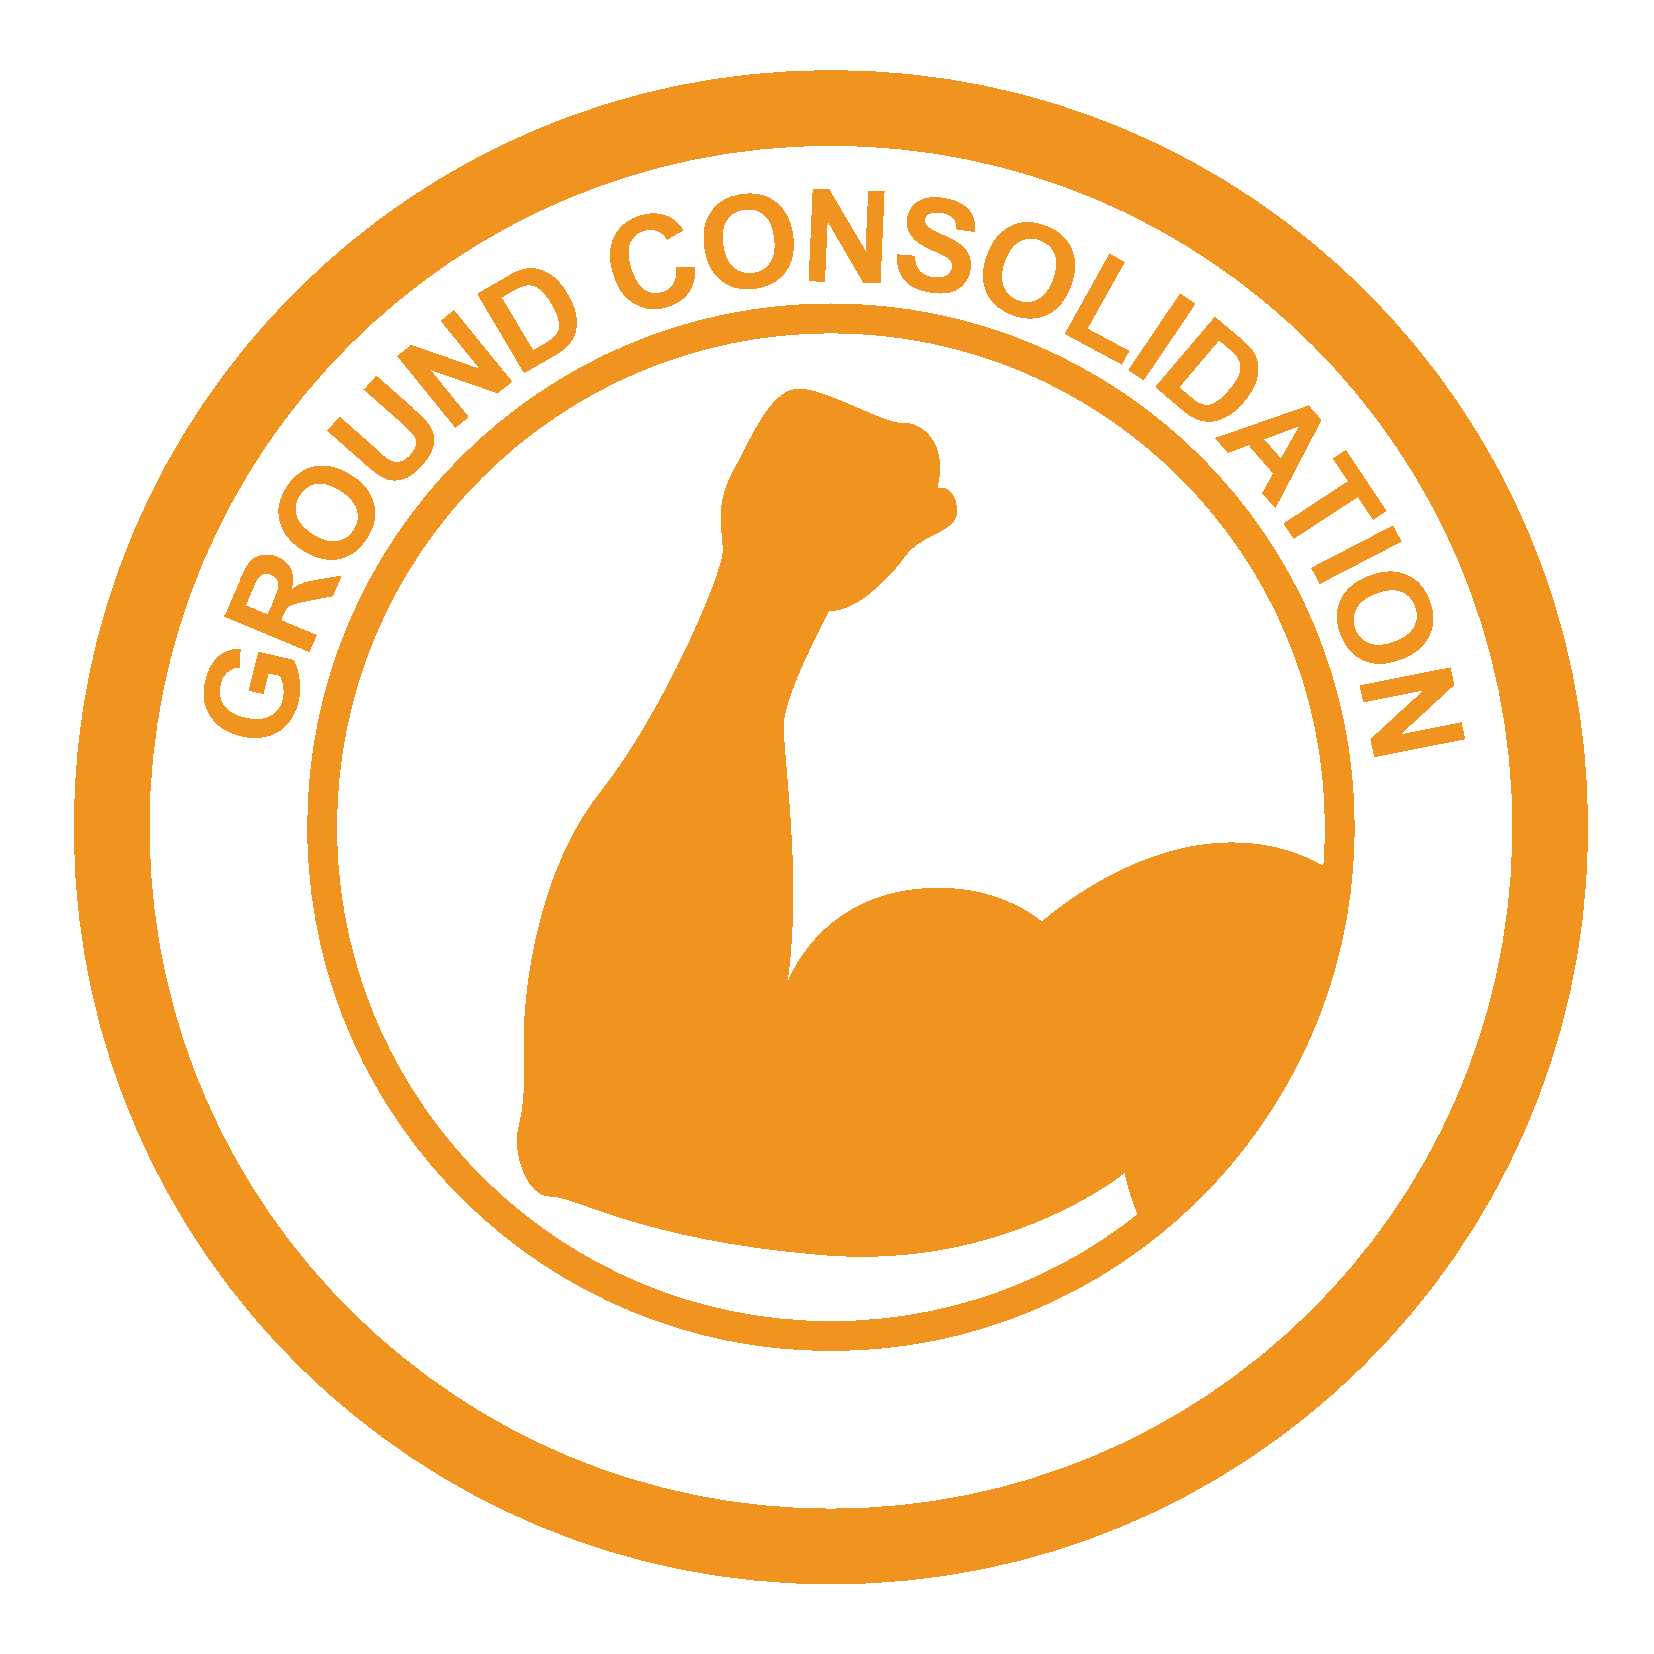 Ground consolidation